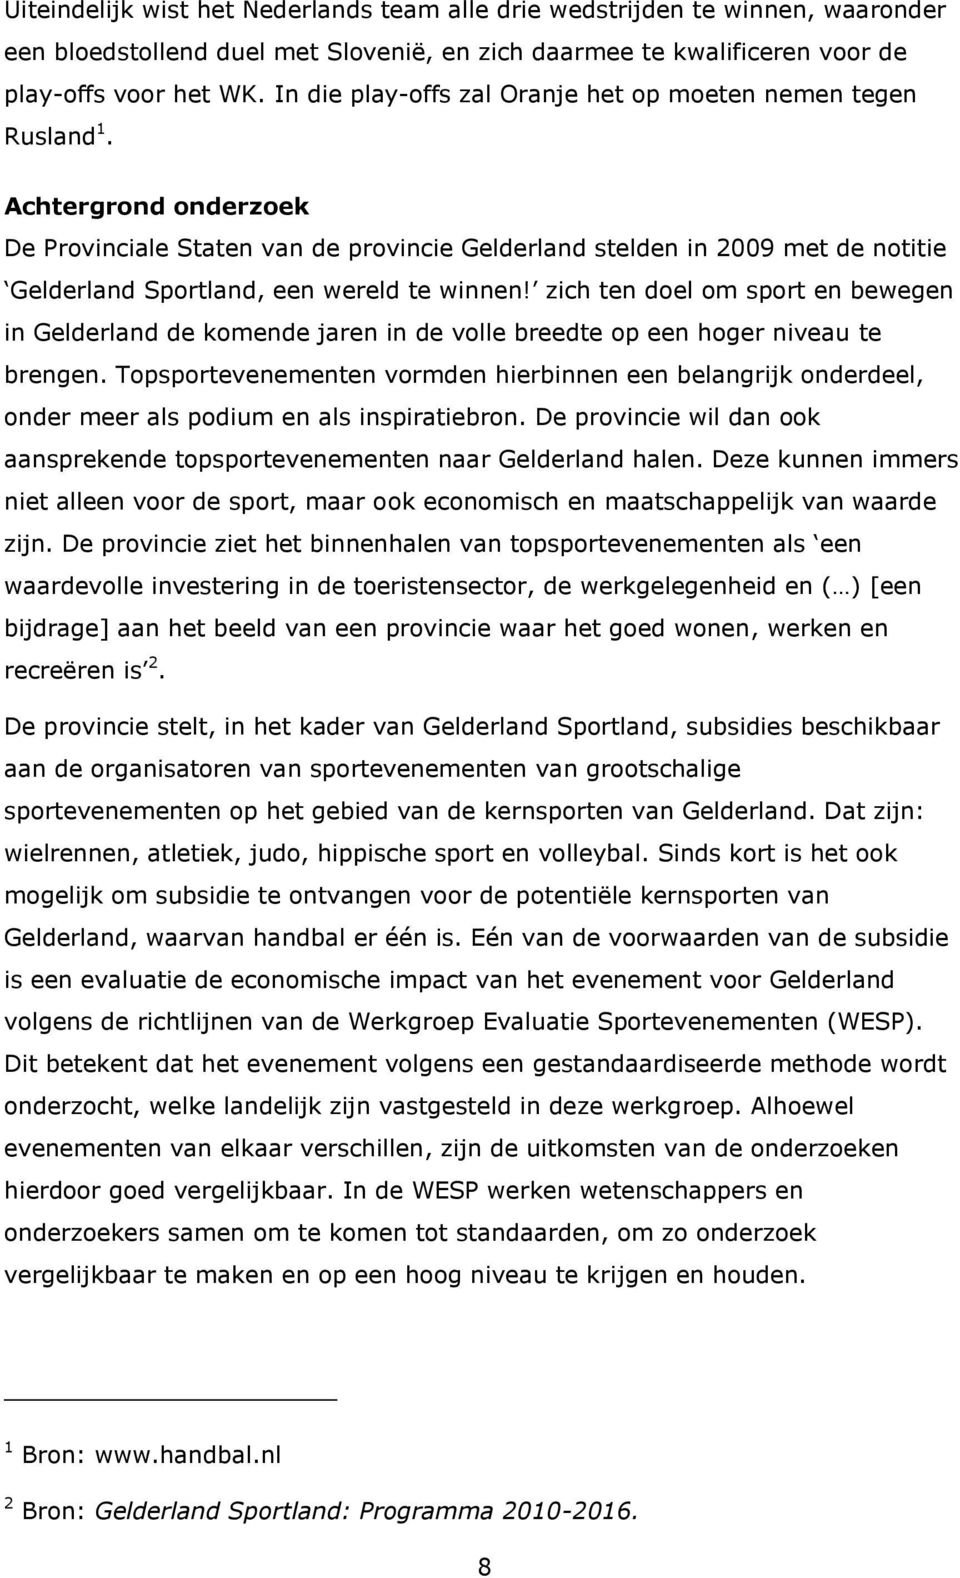 Achtergrond onderzoek De Provinciale Staten van de provincie Gelderland stelden in 2009 met de notitie Gelderland Sportland, een wereld te winnen!